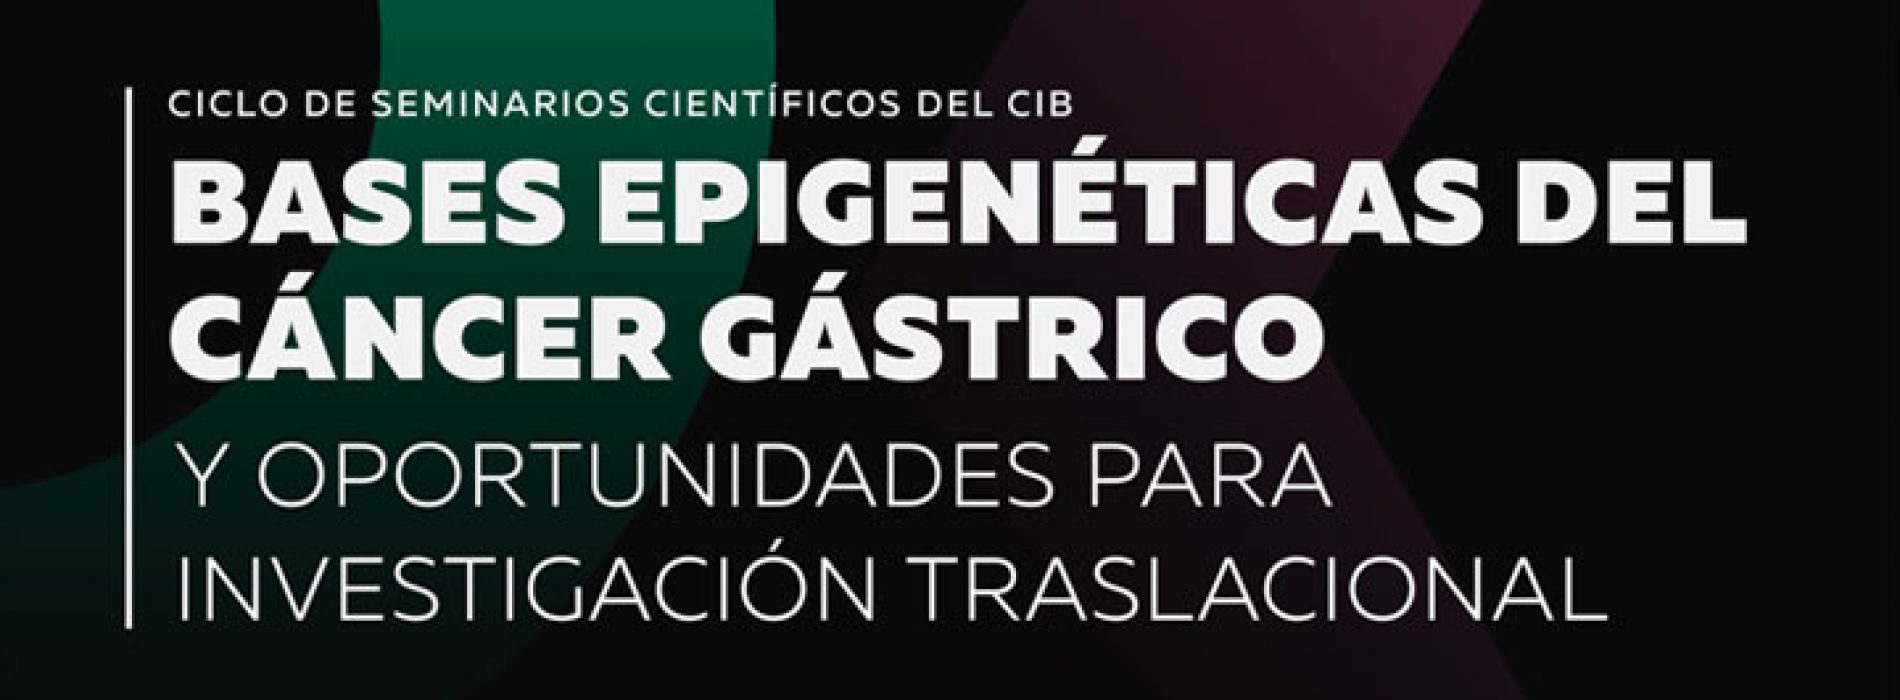 Invitación al seminario del Dr. Alejandro Corvalán: “Bases Epigenéticas del Cáncer Gástrico y Oportunidades para Investigación Traslacional”